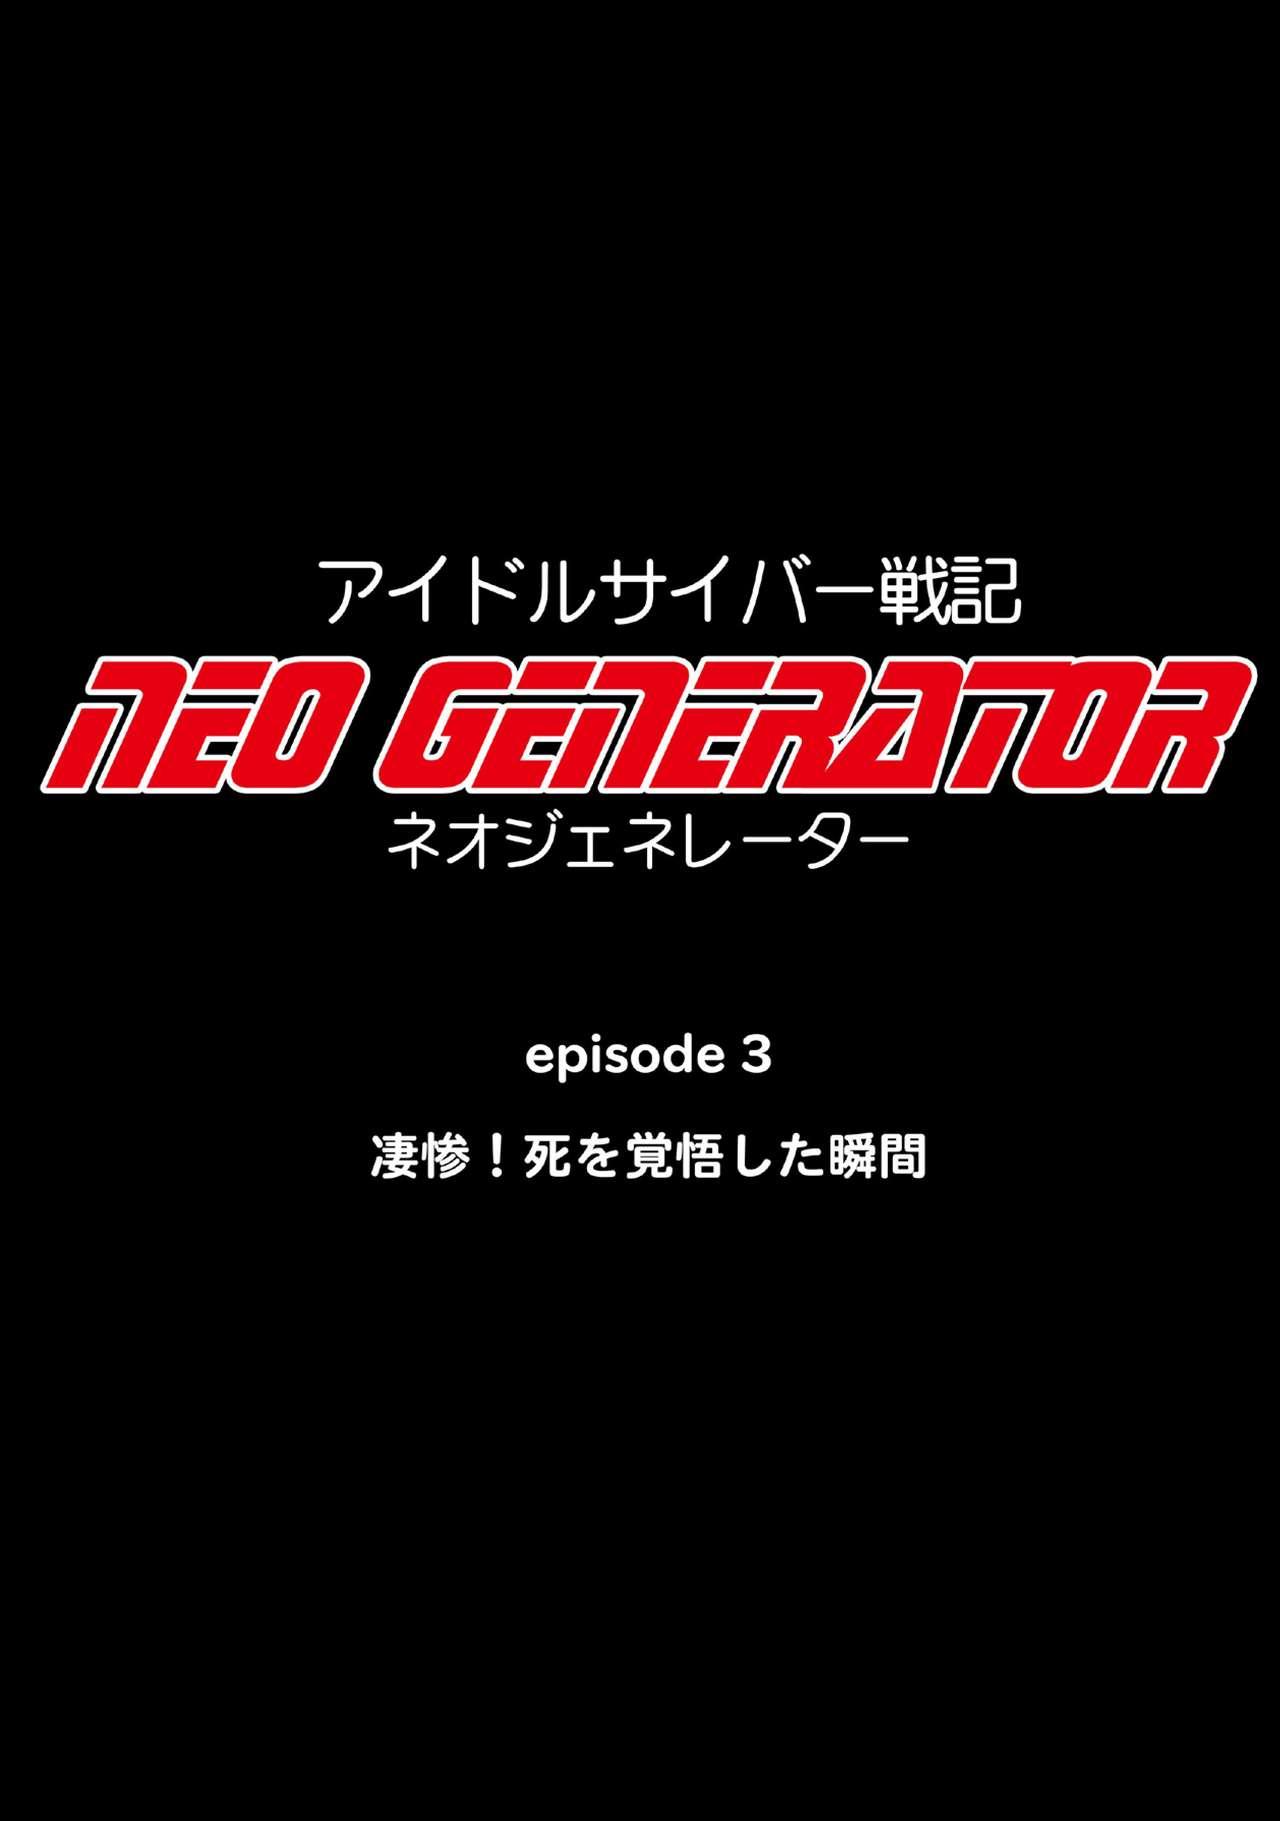 Idol Cyber Battle NEO GENERATOR episode 3 Seisan! Shi o kakugo shita shunkan 6